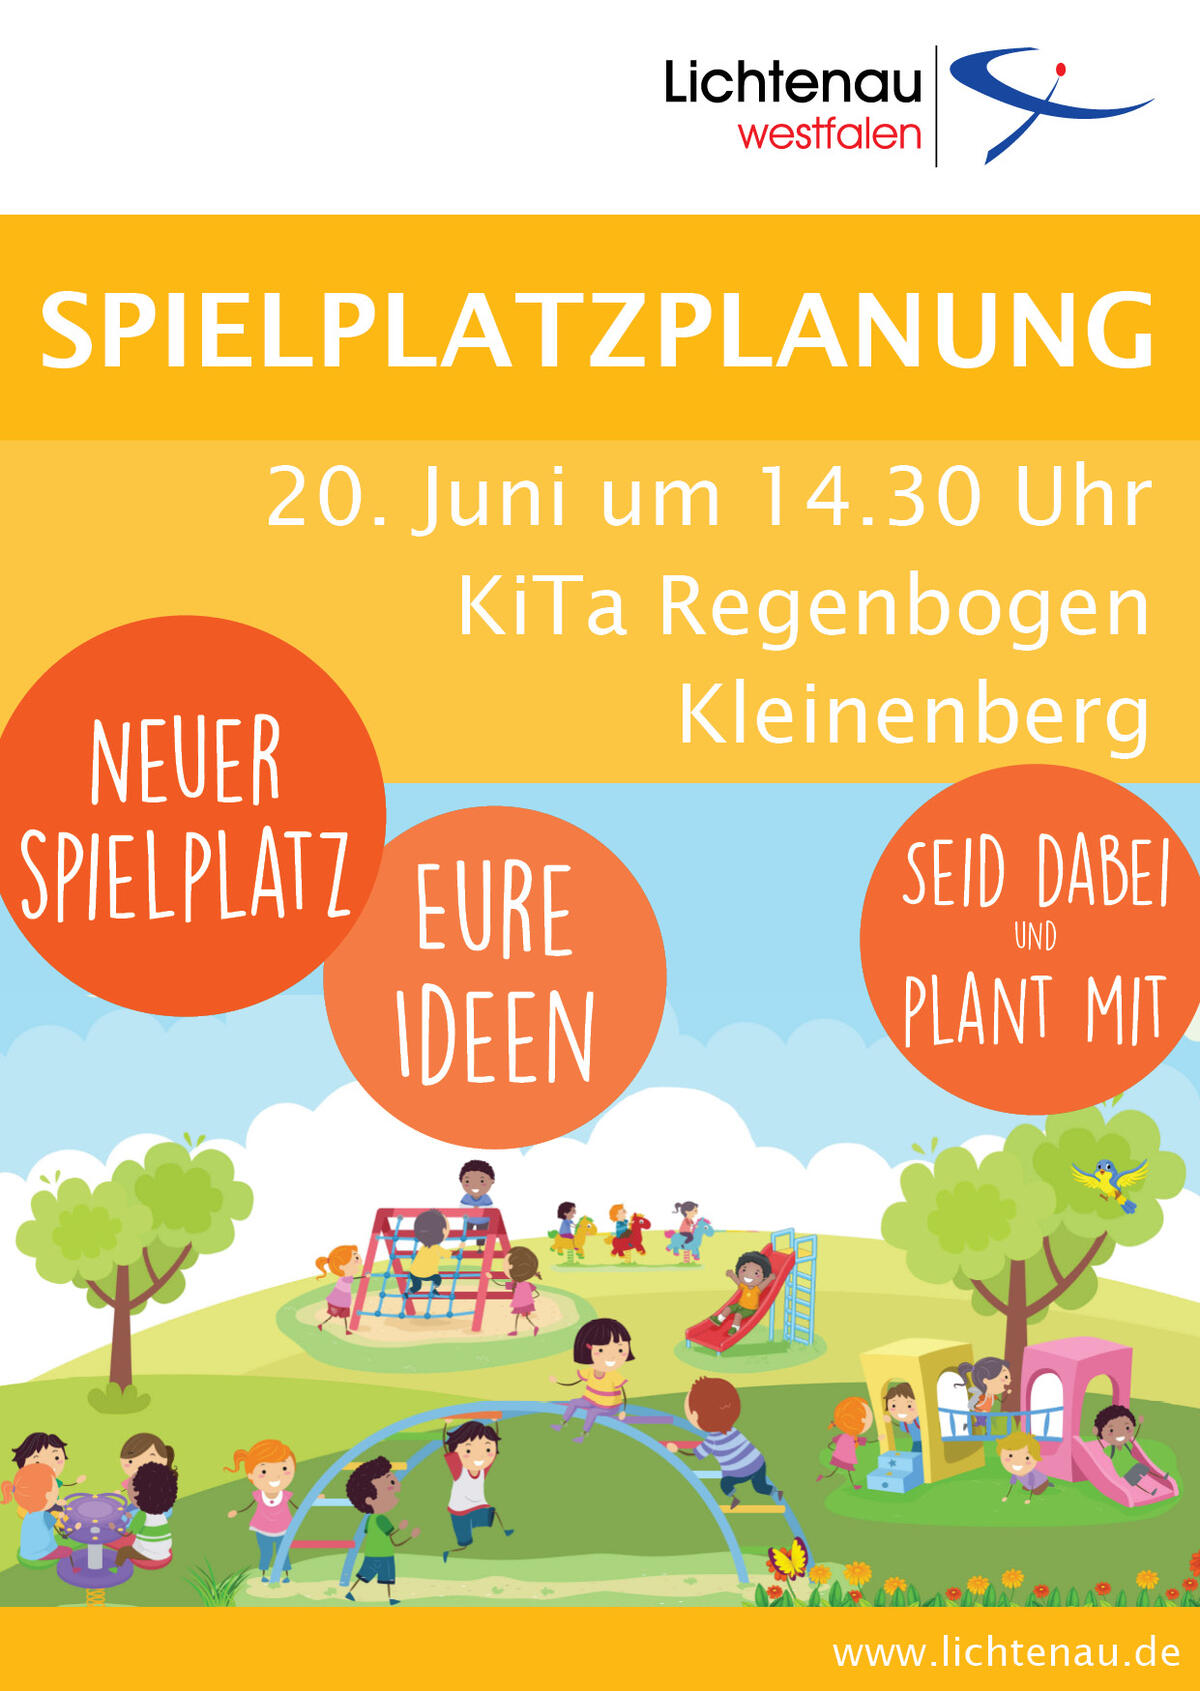 Spielplatzplanung Kleinenberg 20. Juni